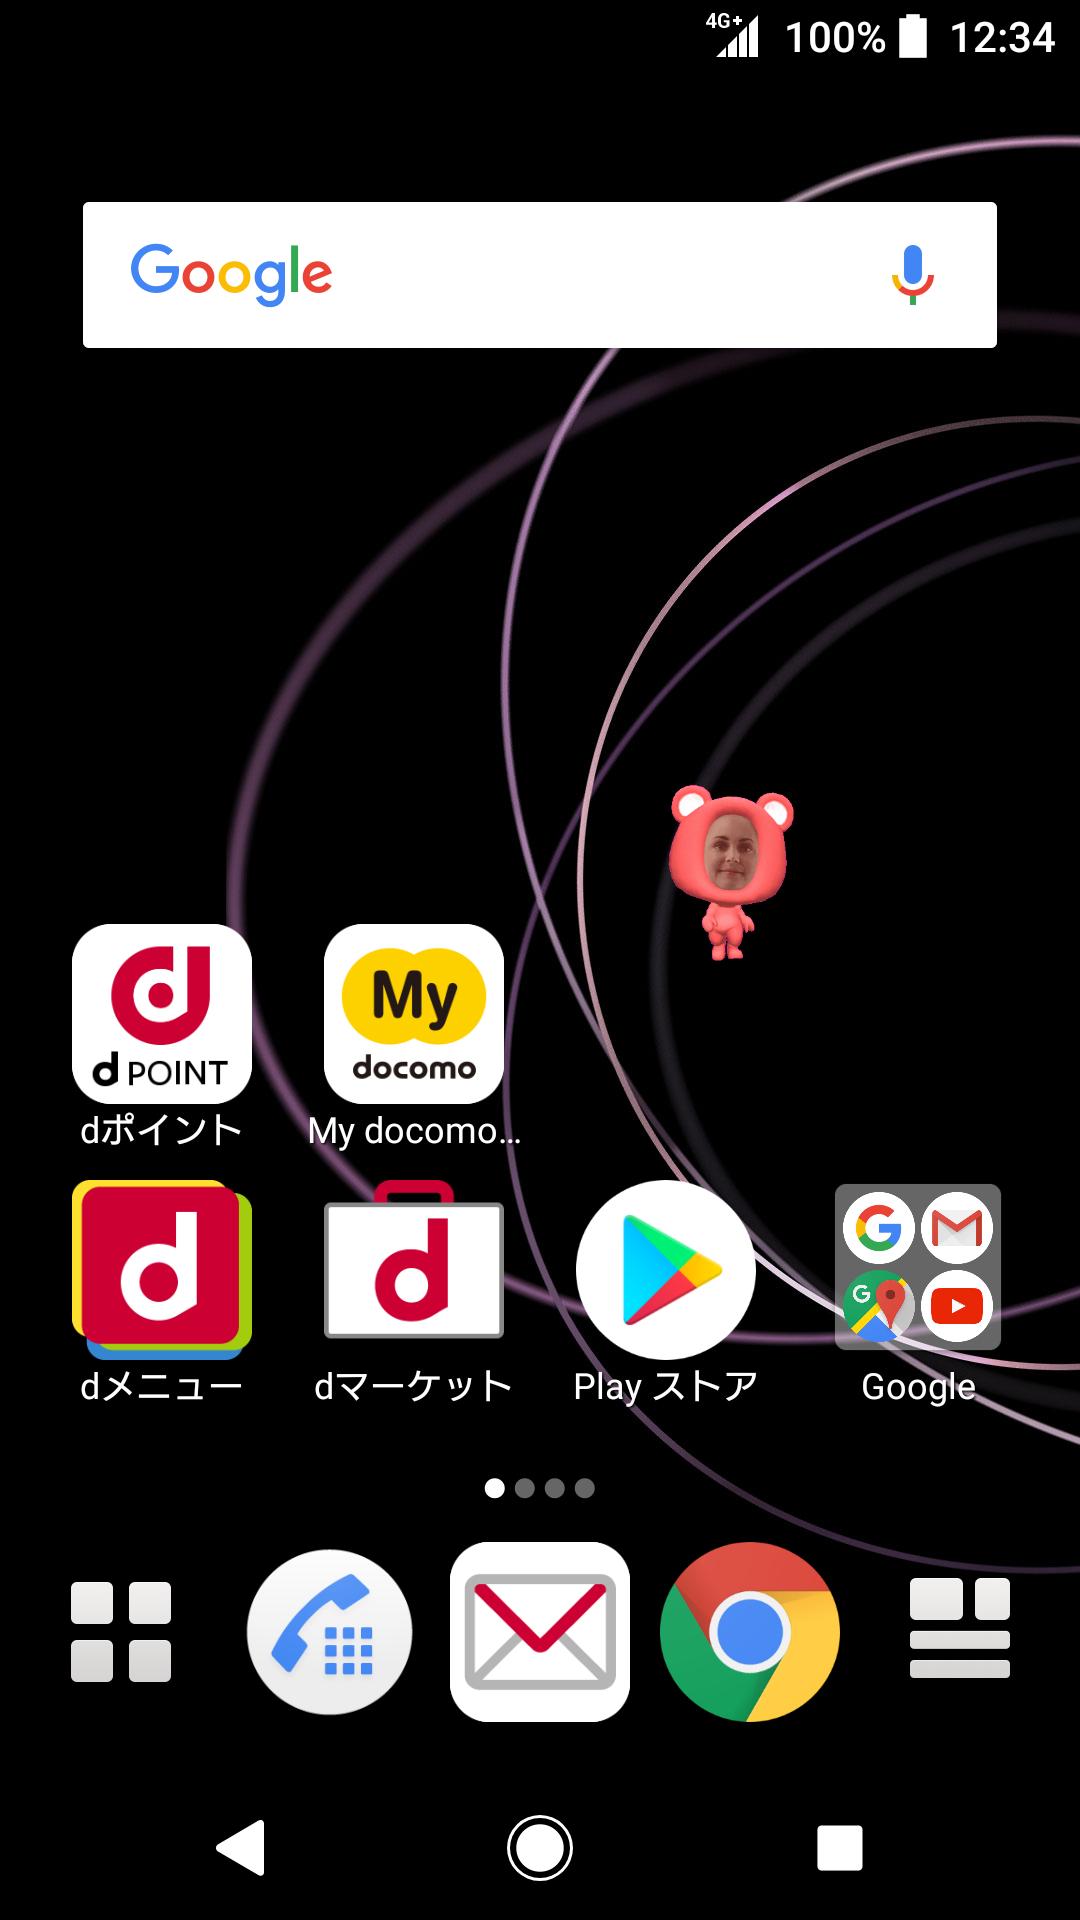 Android 用の 3dマチキャラクリエーター Apk をダウンロード